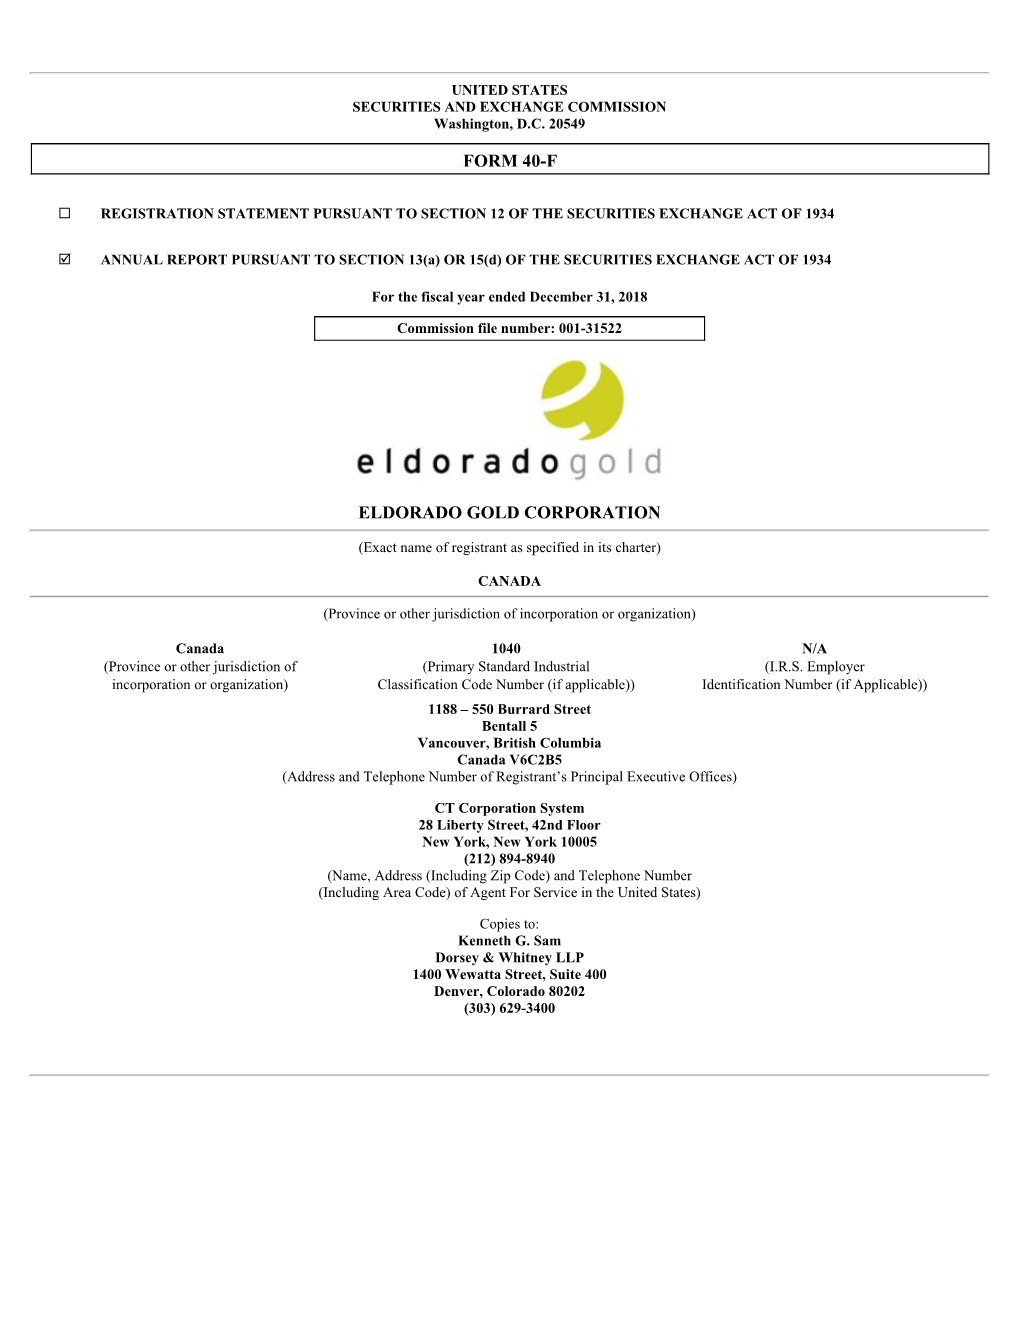 Form 40-F Eldorado Gold Corporation